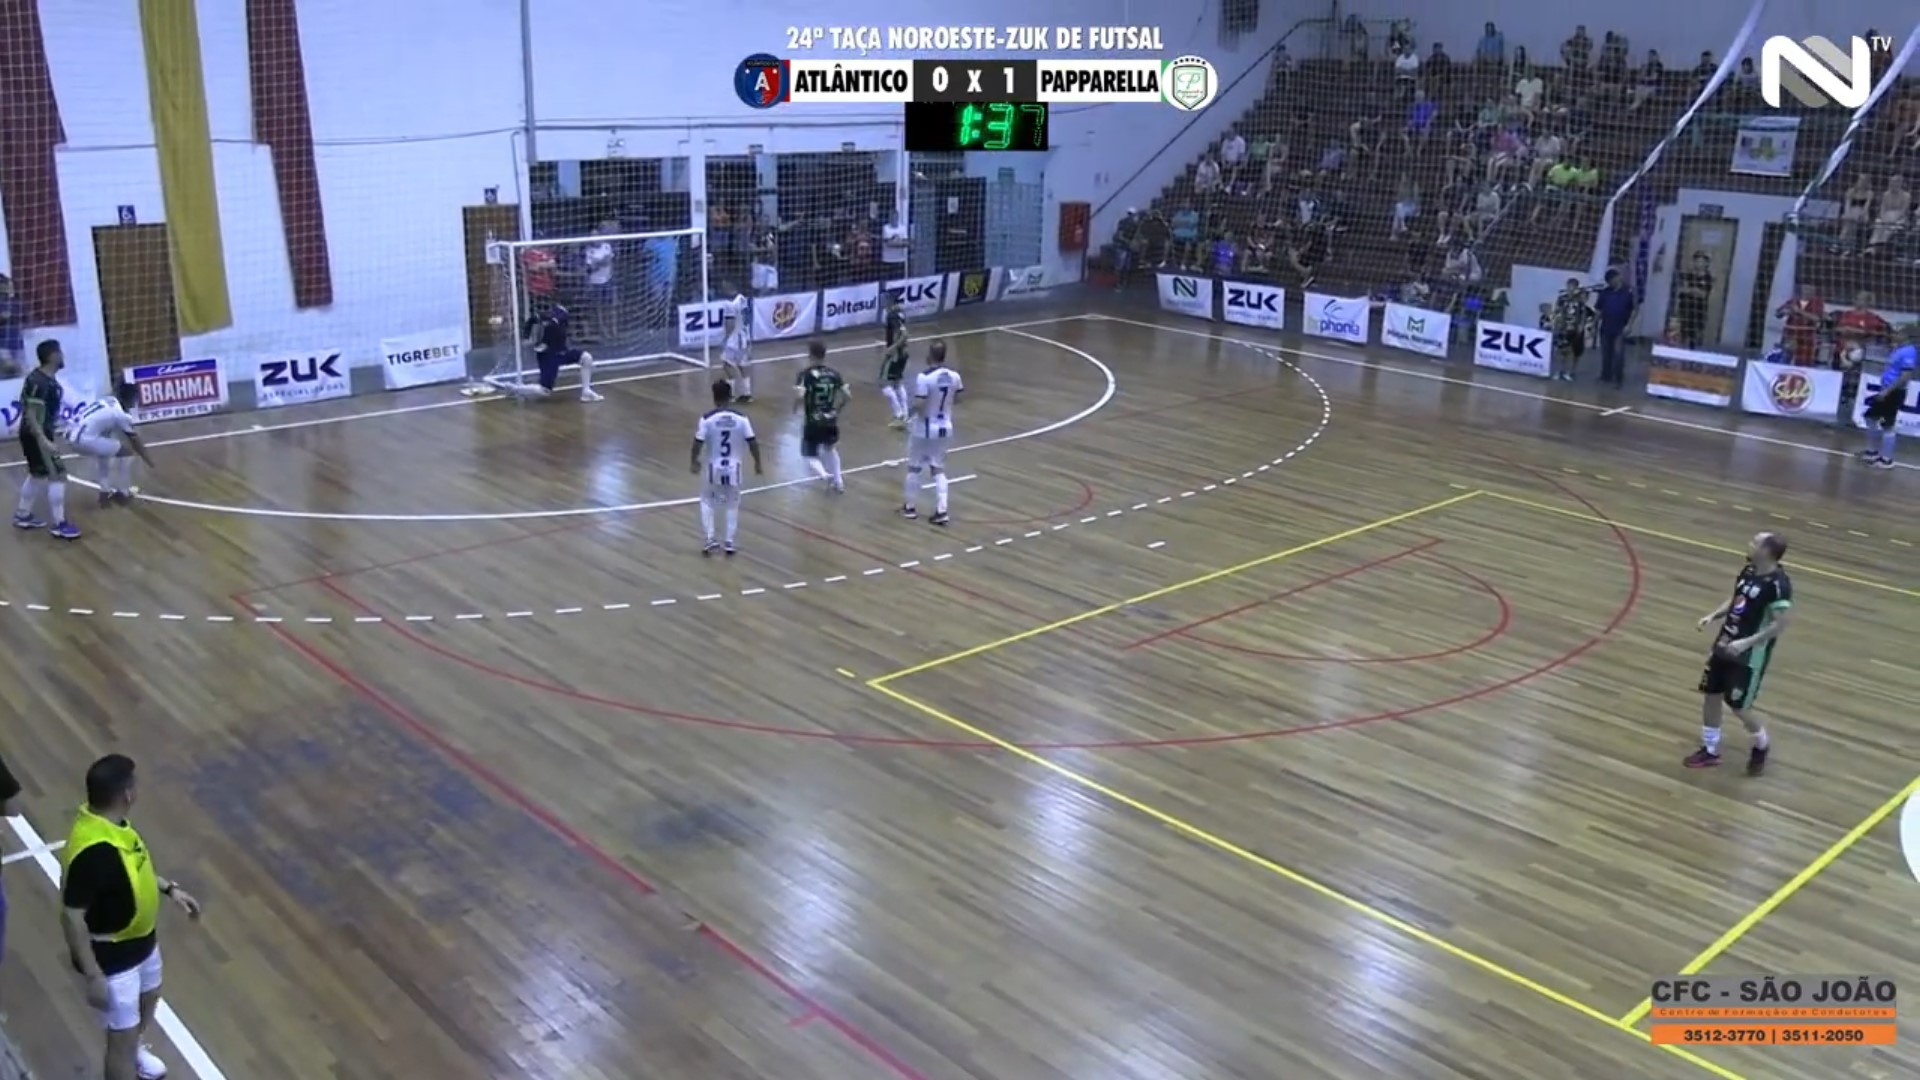 Veja os gols de Atlântico São Nicolau 0 x 3 Papparella pela Taça Noroeste Zuk de Futsal